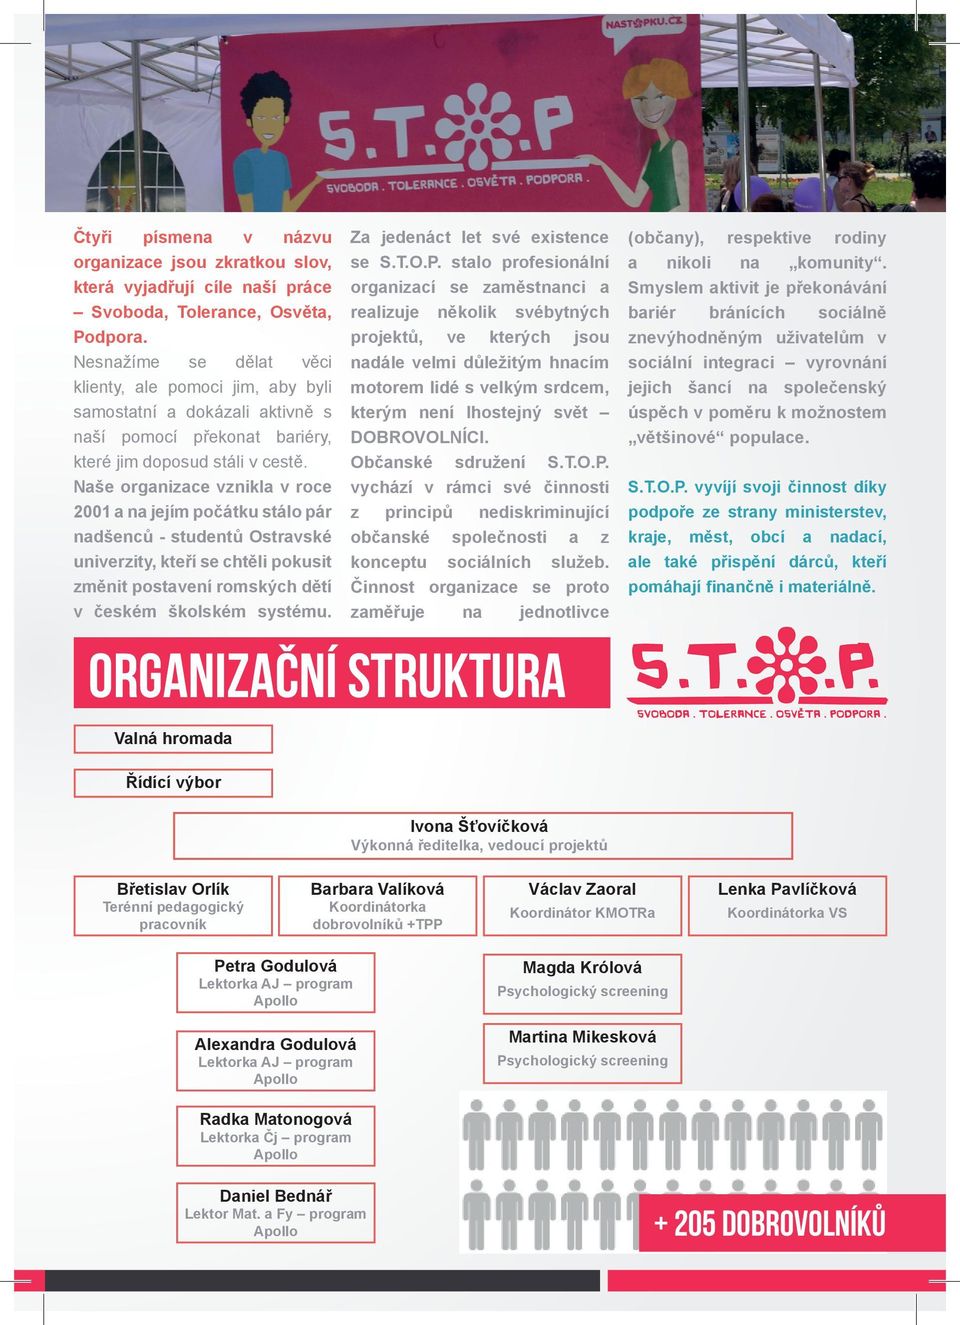 Naše organizace vznikla v roce 2001 a na jejím počátku stálo pár nadšenců - studentů Ostravské univerzity, kteří se chtěli pokusit změnit postavení romských dětí v českém školském systému.